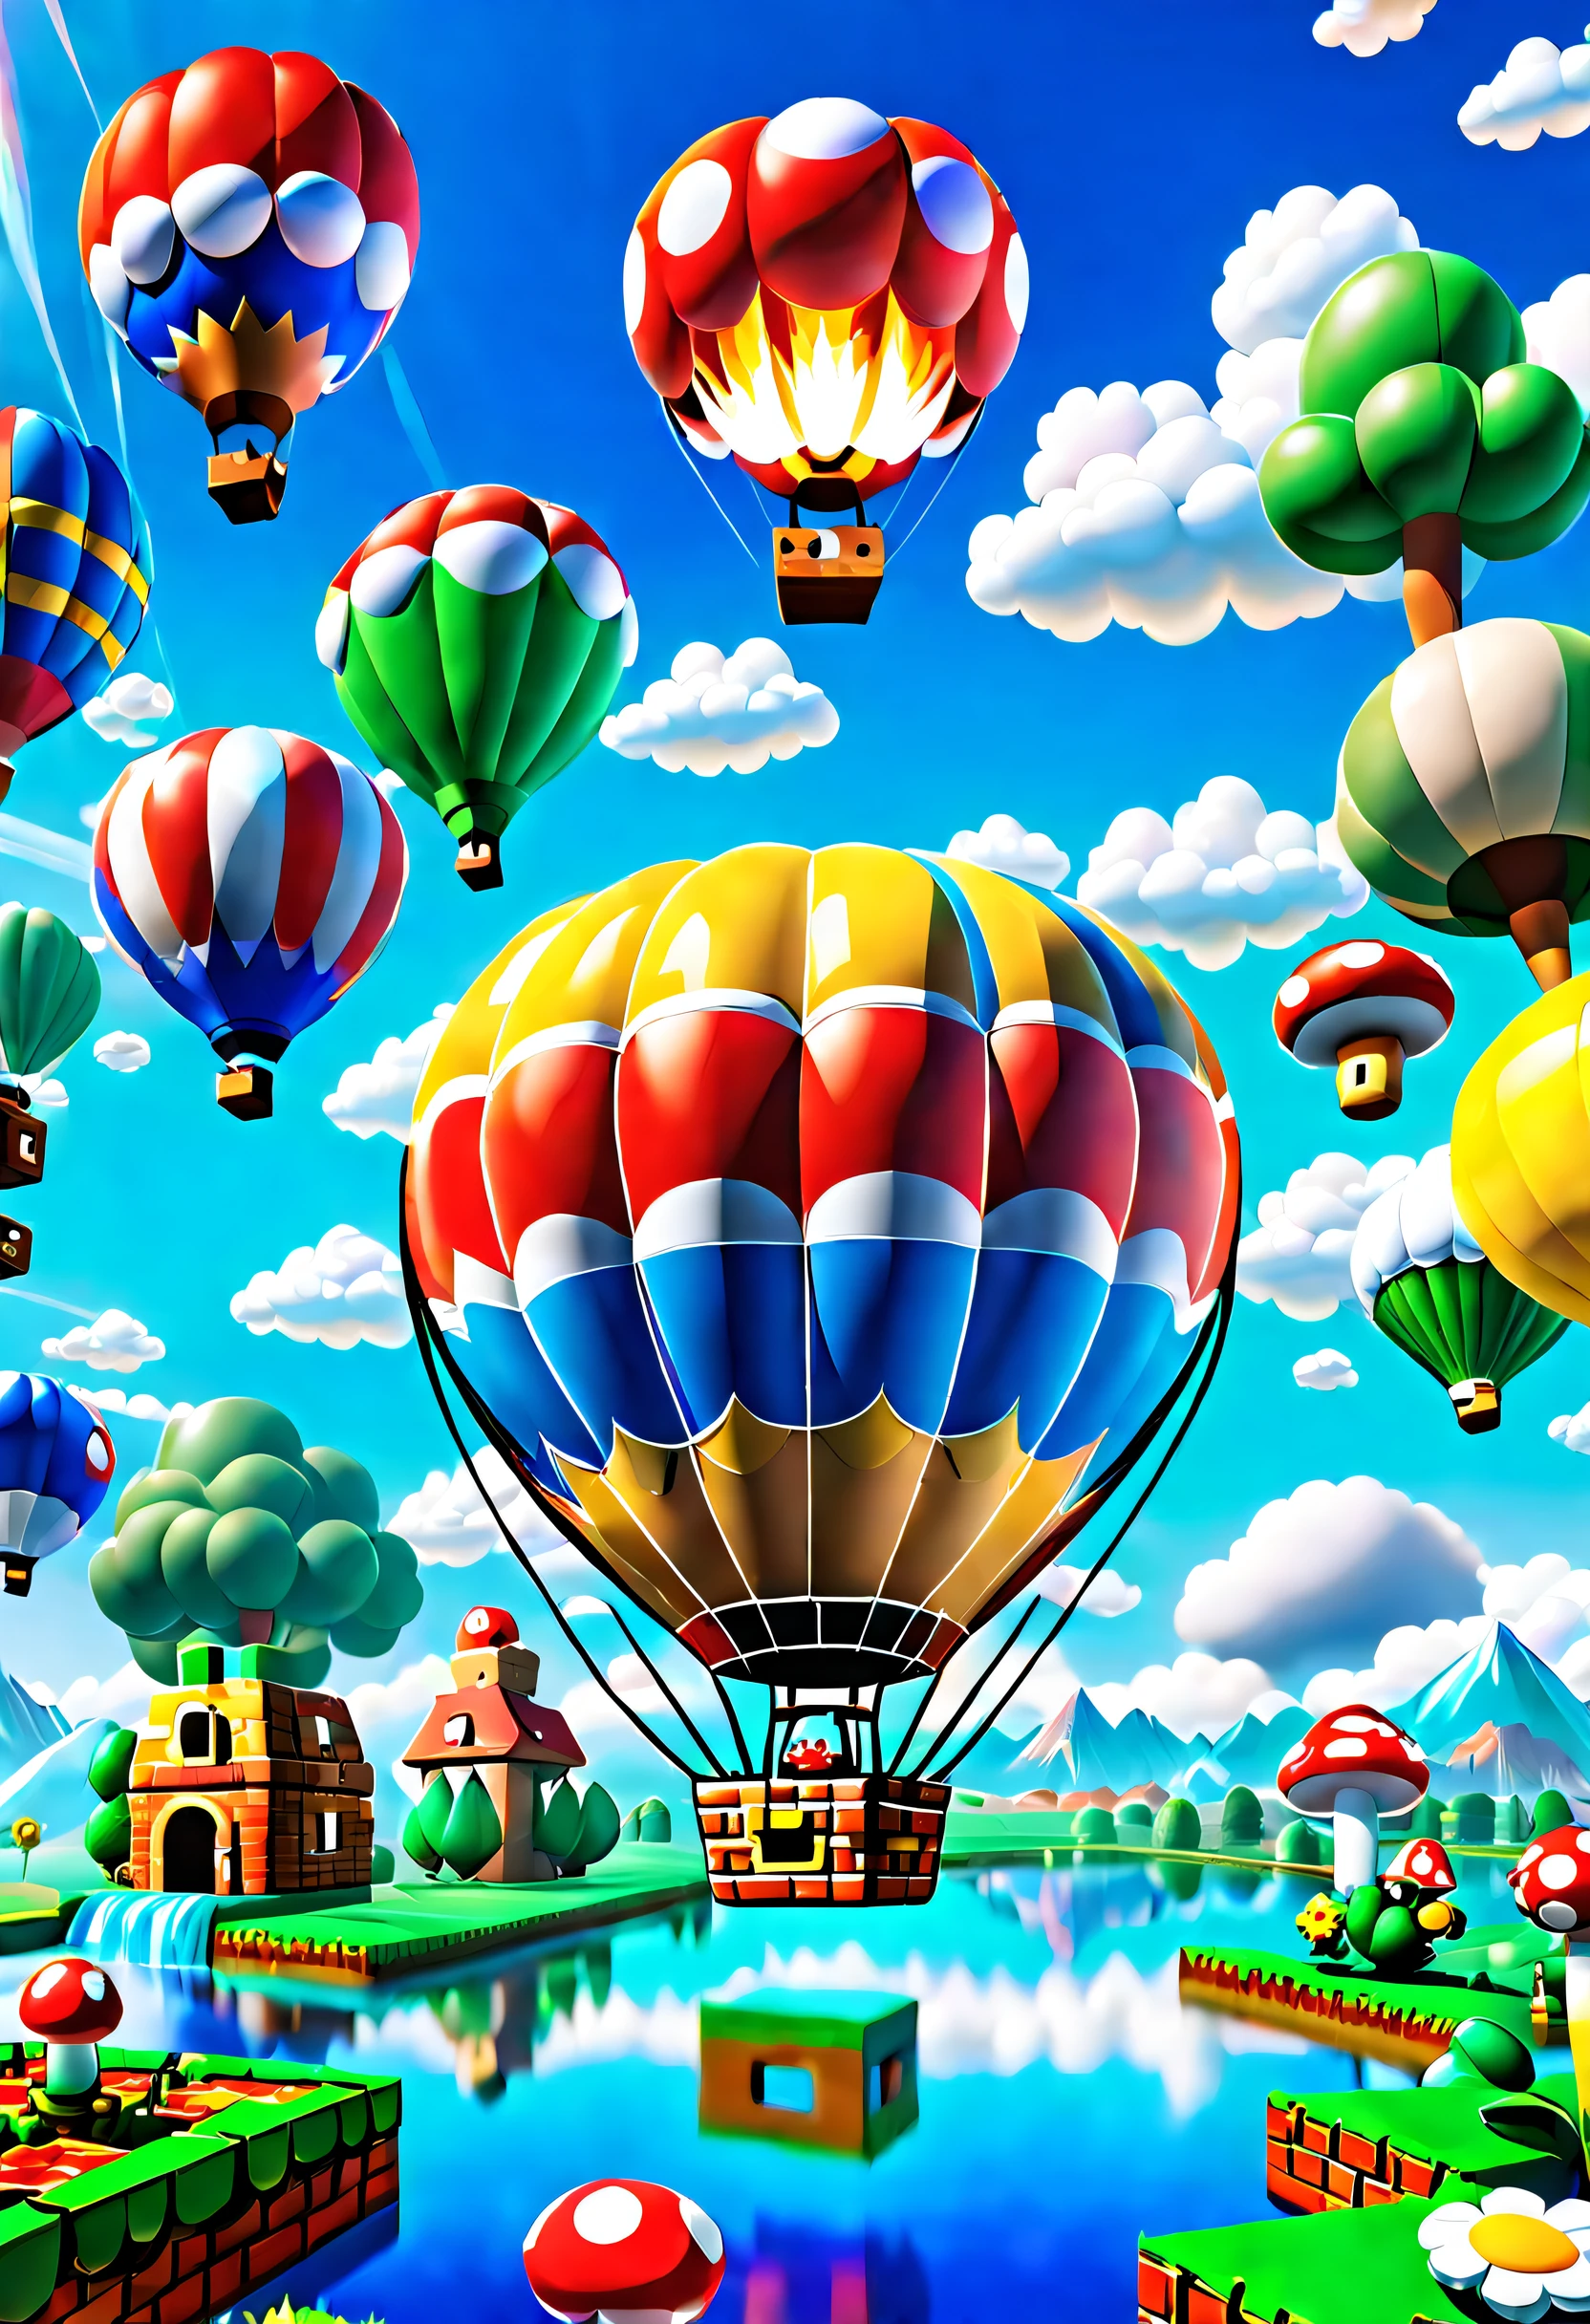 豐富多彩的 (熱氣球:1.1) 在絢麗多彩的天空中，A giant 熱氣球 floats slowly。This 熱氣球 look is completely inspired by the world of the Super Mario game，與馬裡奧一起裝飾、路易吉、蘑菇和金幣等標誌性圖案。The 熱氣球 itself takes on a vivid red and blue hue，呈現生動的視覺效果。它的底座裝飾有經典馬裡奧背景的元素，例如草、雲和水管。The basket of the 熱氣球 is made up of blocks from the Mario series，每個方塊顯示不同的圖案和顏色，營造像素化的感覺, 荒謬的, 超詳細, 高解析度, 數位藝術, 向量插圖, 计算机生成的图像, 抛光图形, 多才多藝的技術, 尖端设计